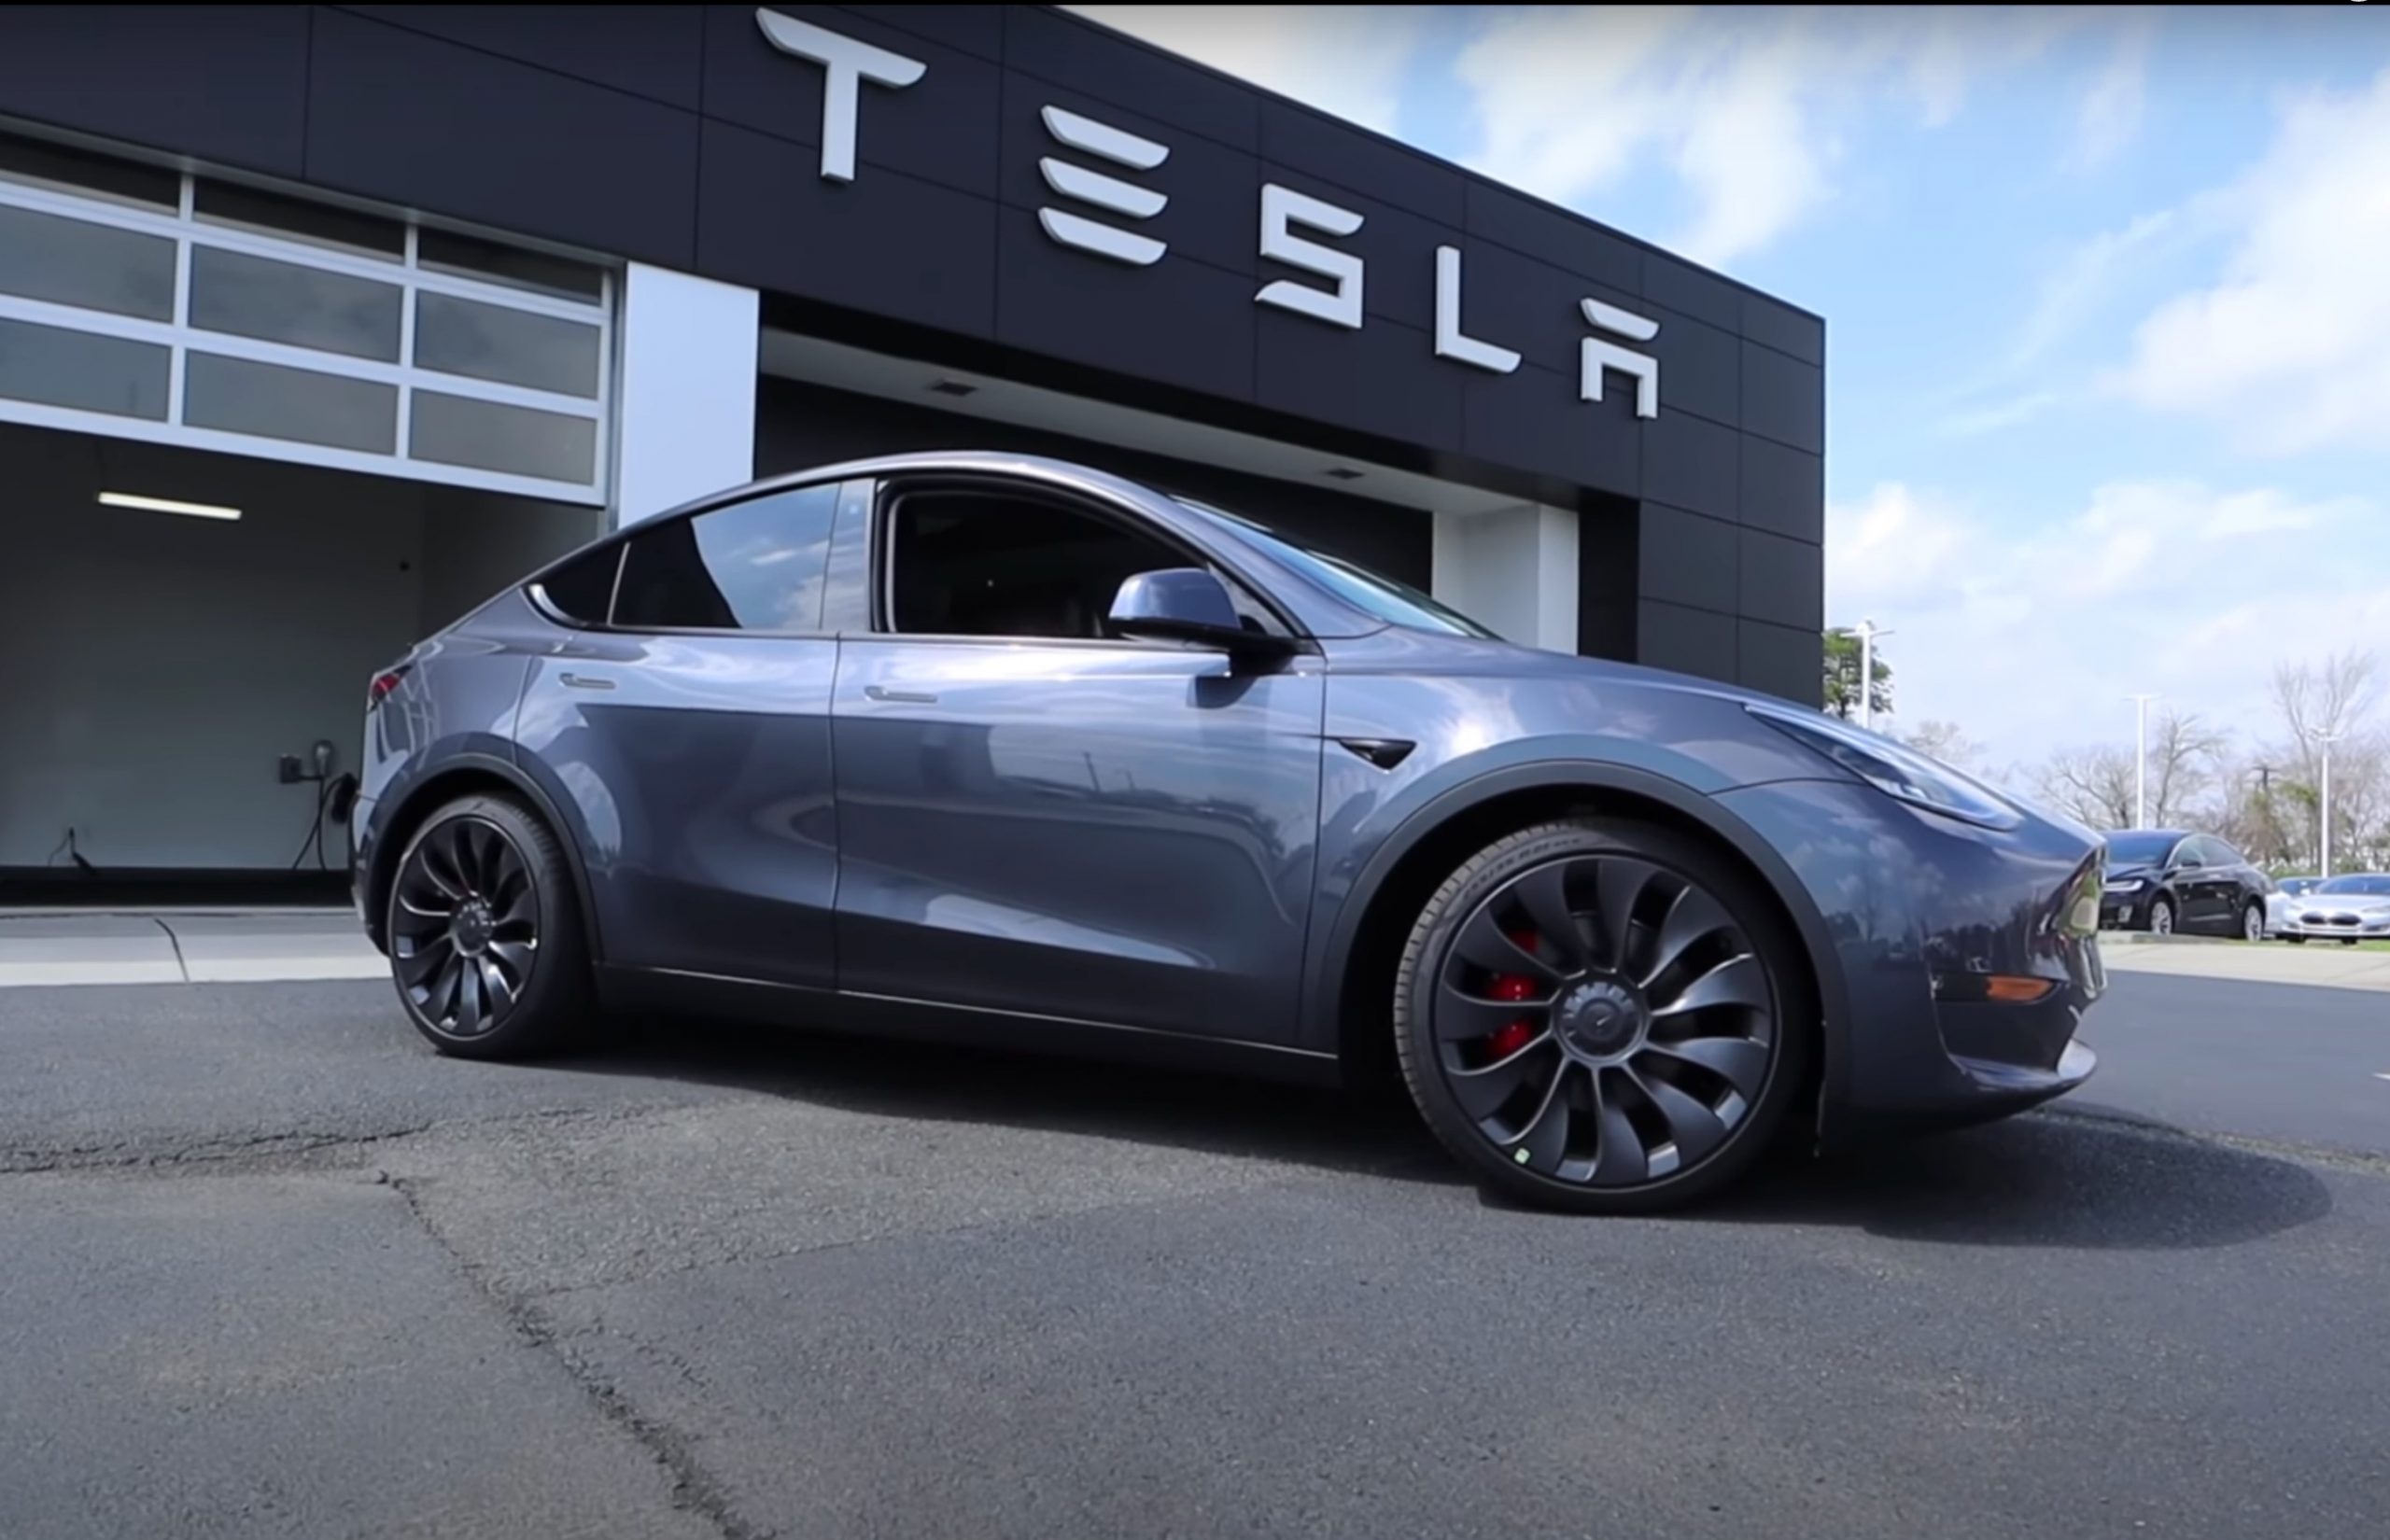 Η γυάλινη οροφή ενός ολοκαίνουργιου Tesla Model Y άφησε τη θέση της στον αυτοκινητόδρομο [video]